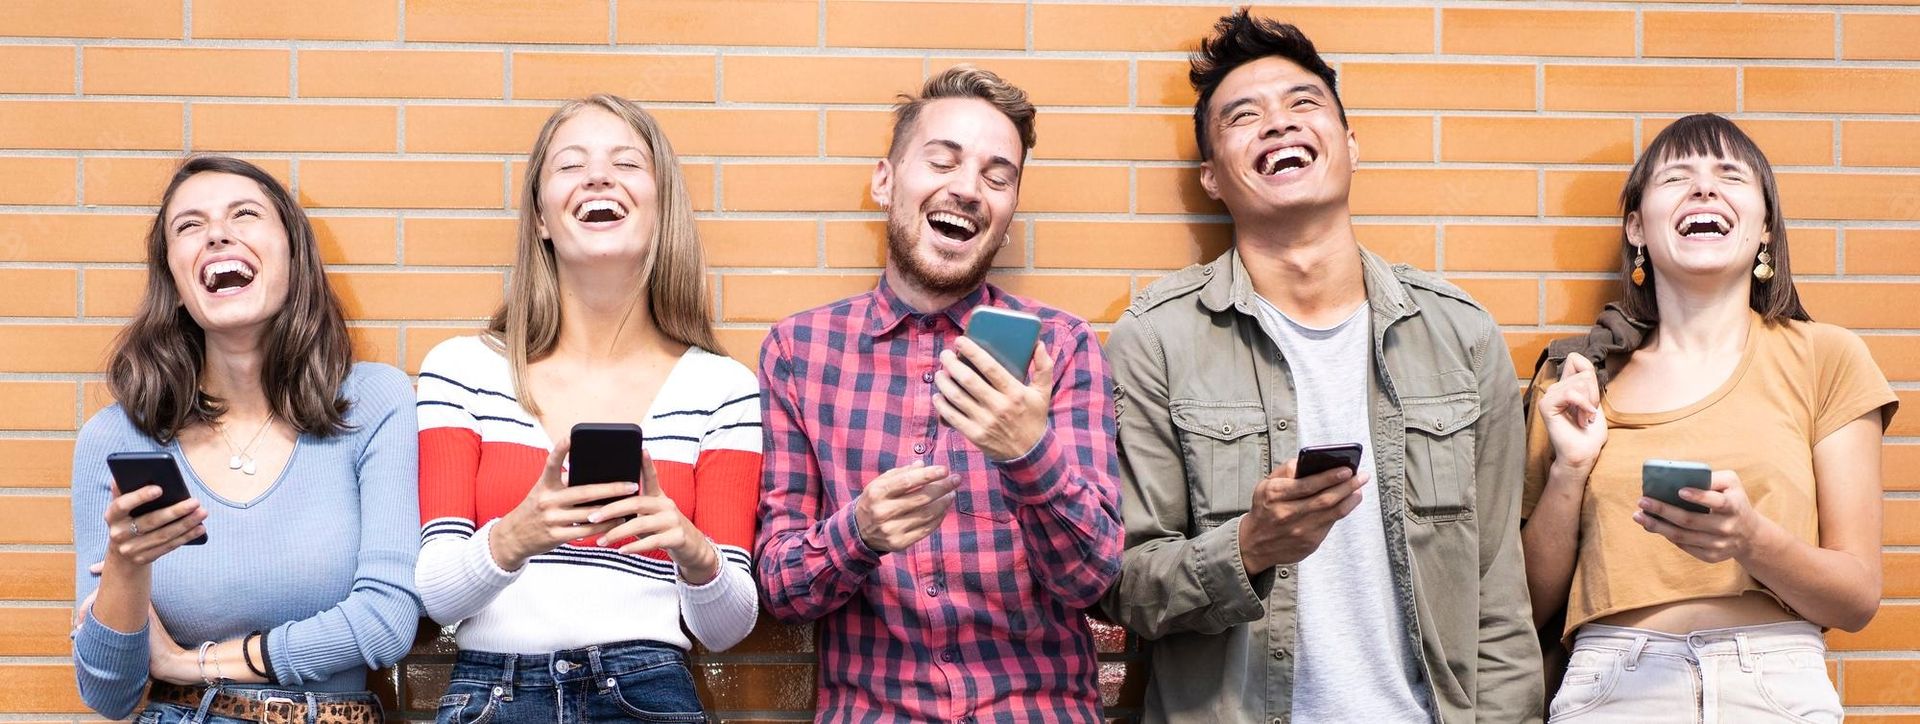 Группа людей смеется над своим телефоном